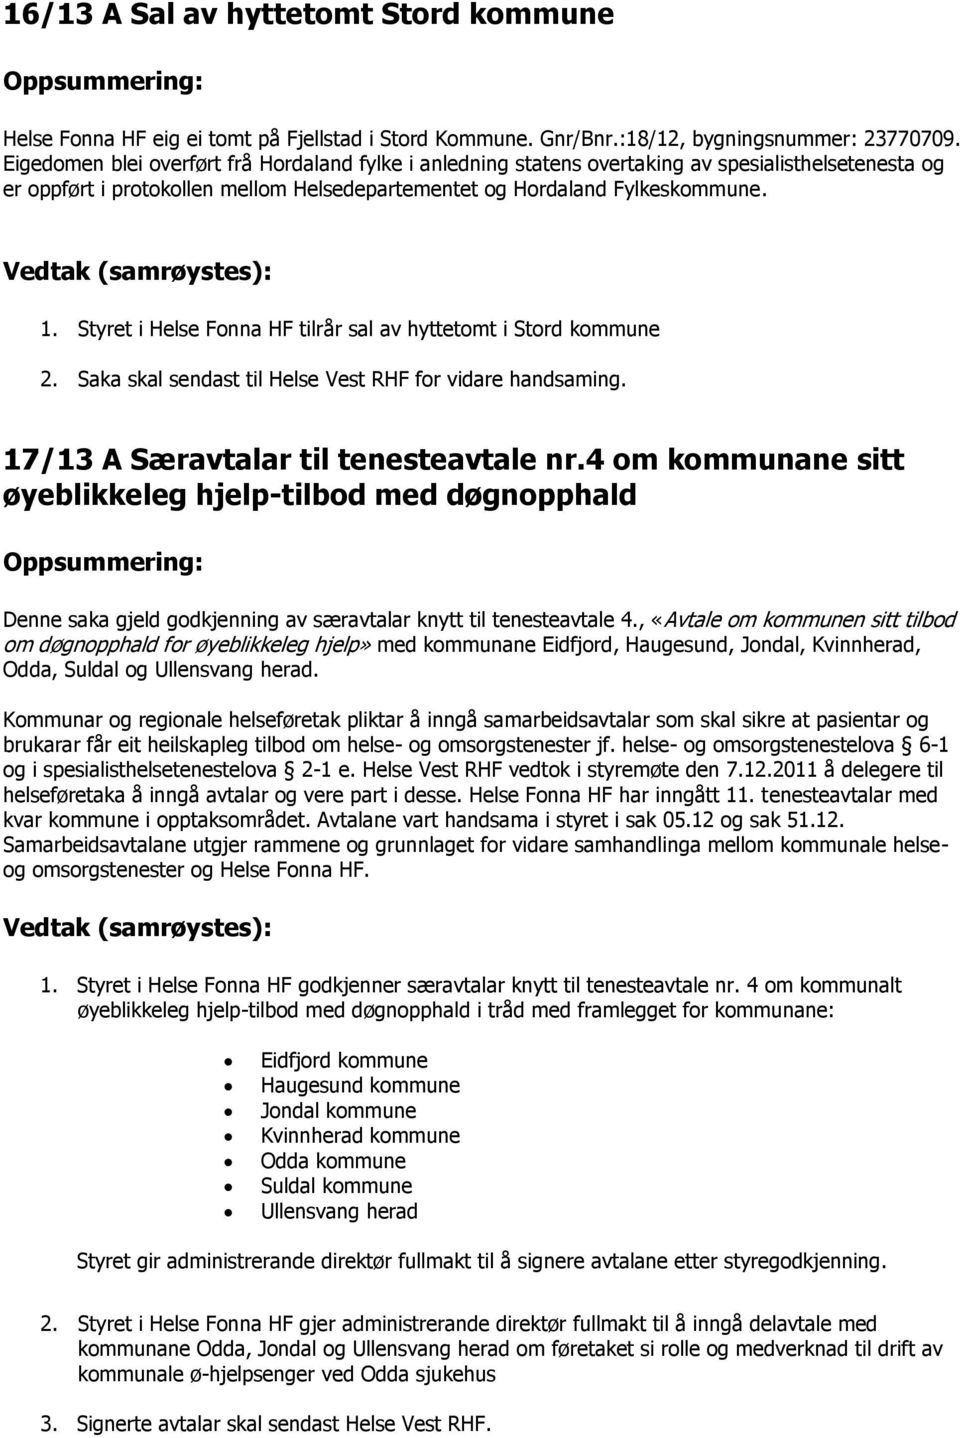 INNKALLING TIL STYREMØTE HELSE FONNA HF - PDF Free Download